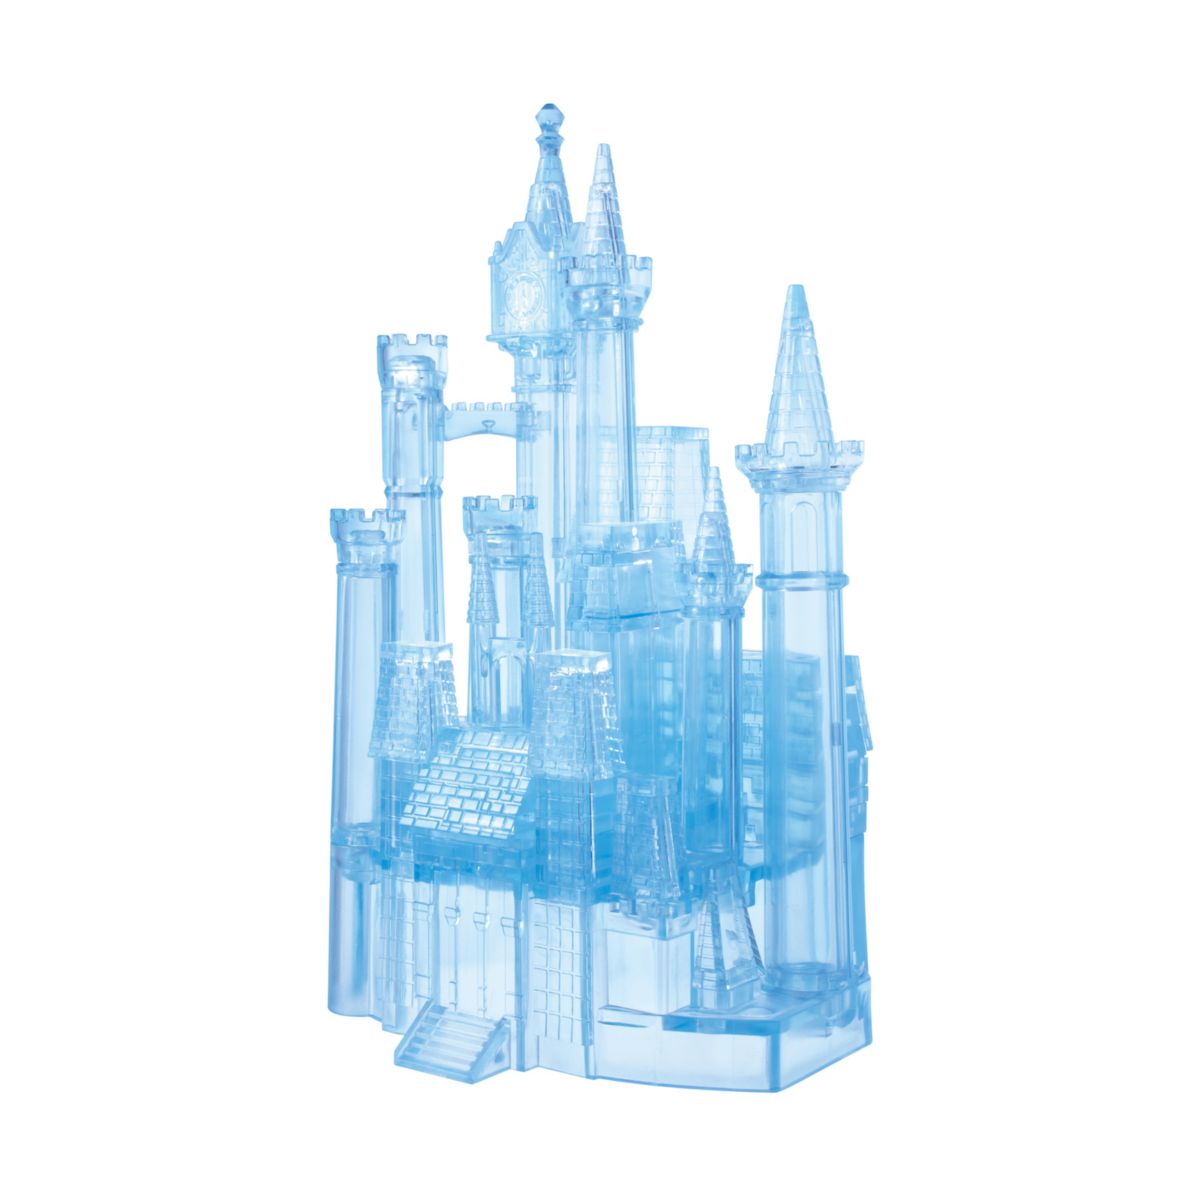 Университетские игры 3D Crystal Puzzle - Disney's Cinderella's Castle 71-Pieces University Games